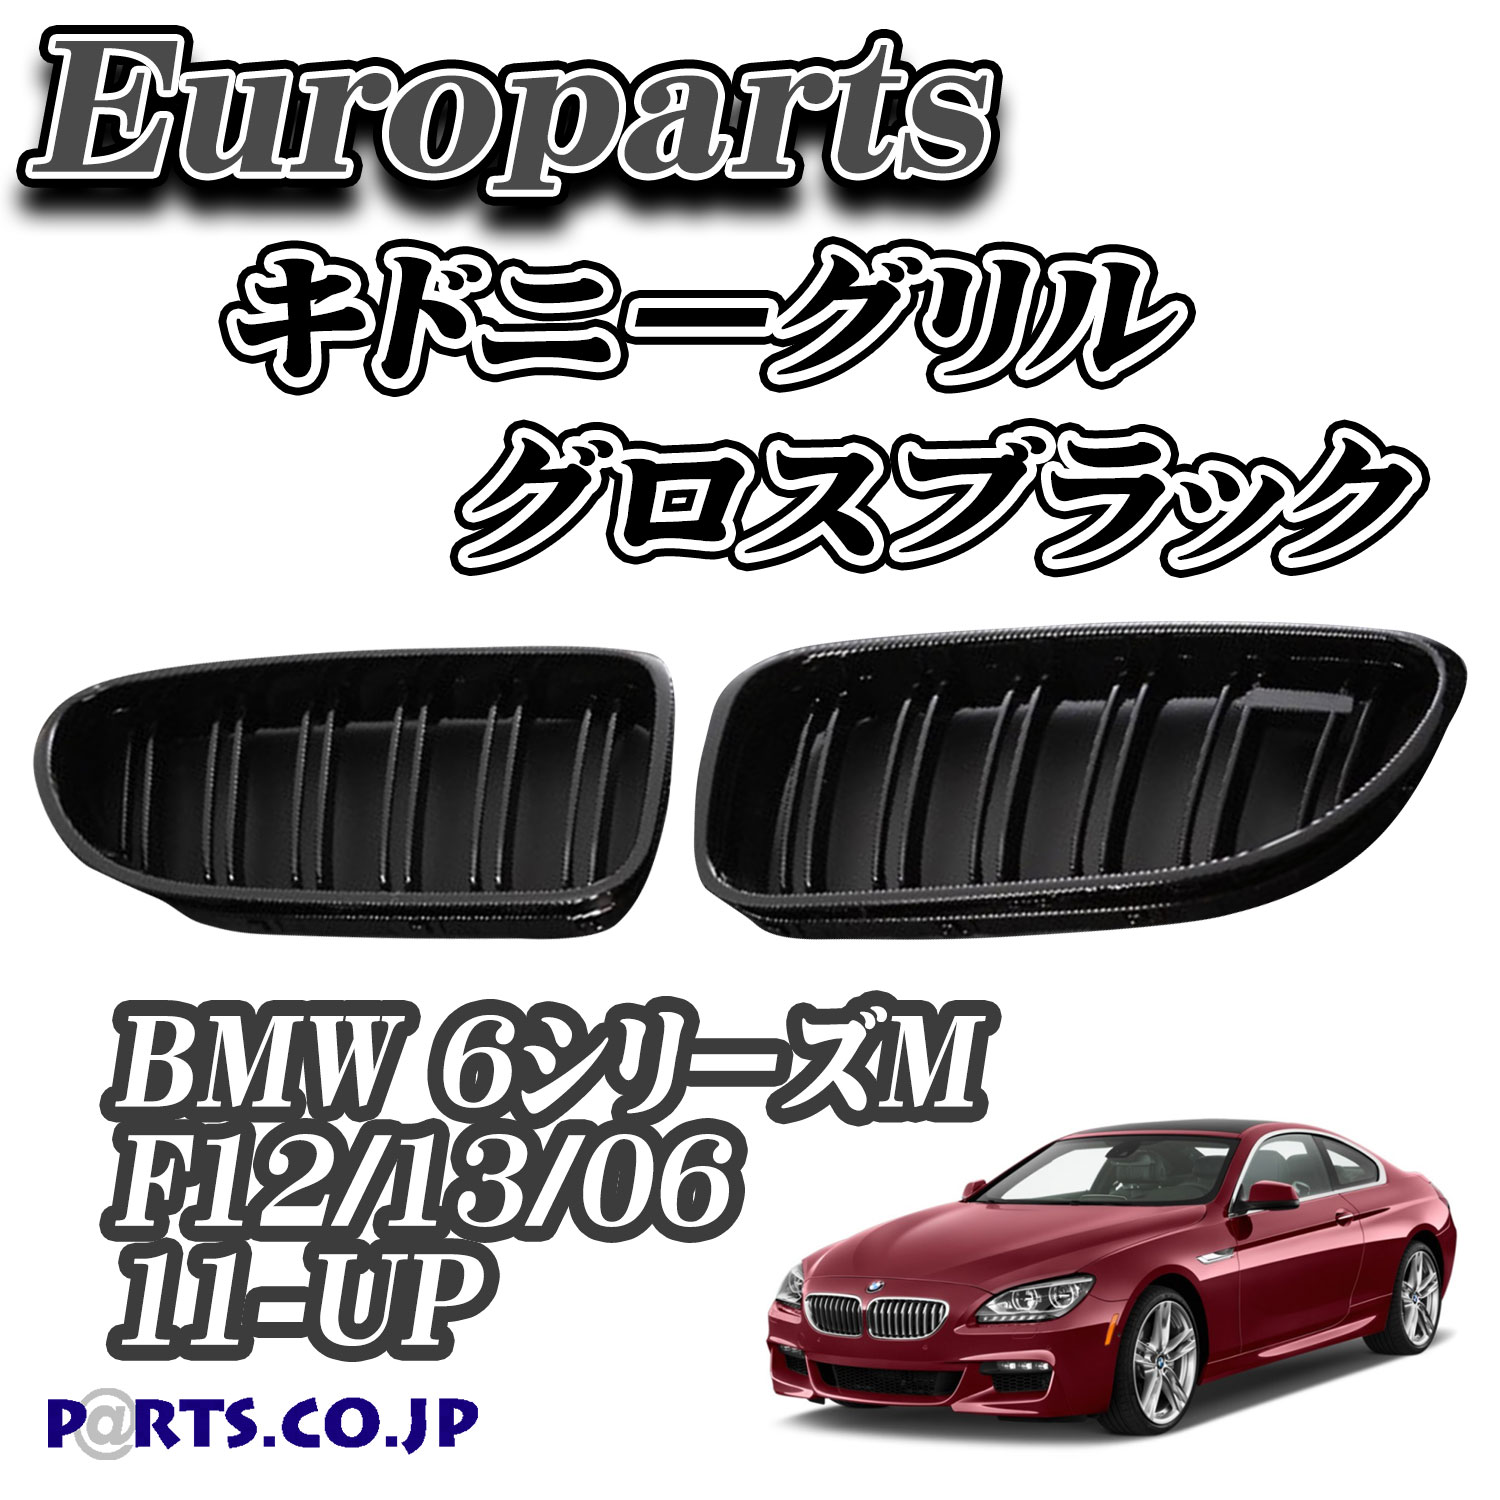 Europarts(ユーロパーツ) BMW 6シリーズM F12/13/06 グリル キドニーグリル BMW 6シリーズM F12/13/06 11-UP グロスブラック